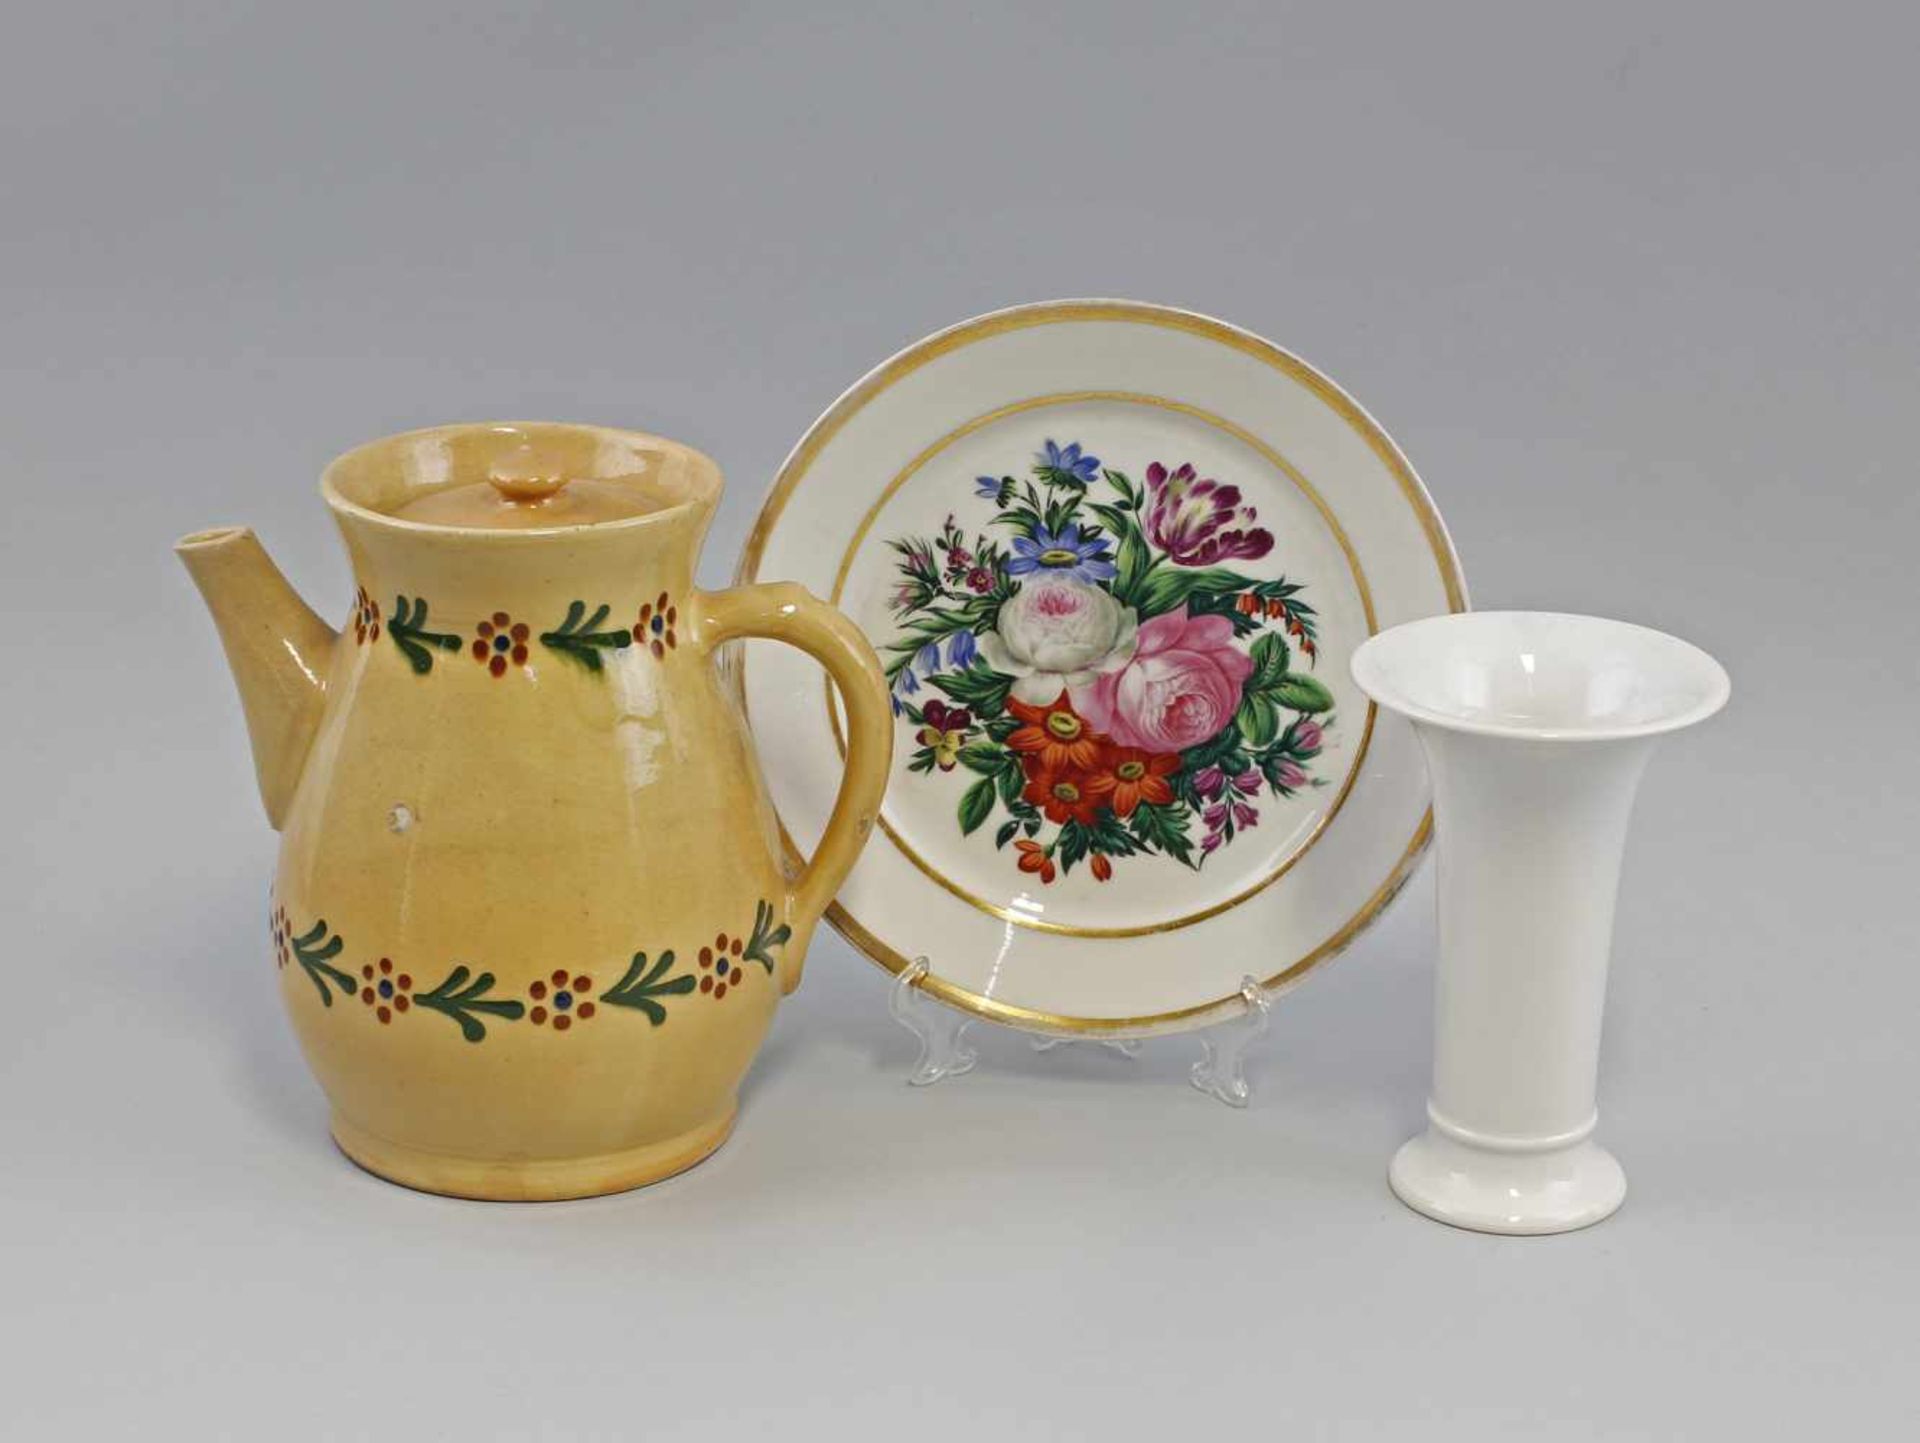 kleines Konvolut : bestehend aus Keramik-Kanne, Weißporzellan-Vase und handbemaltem Porzellan-